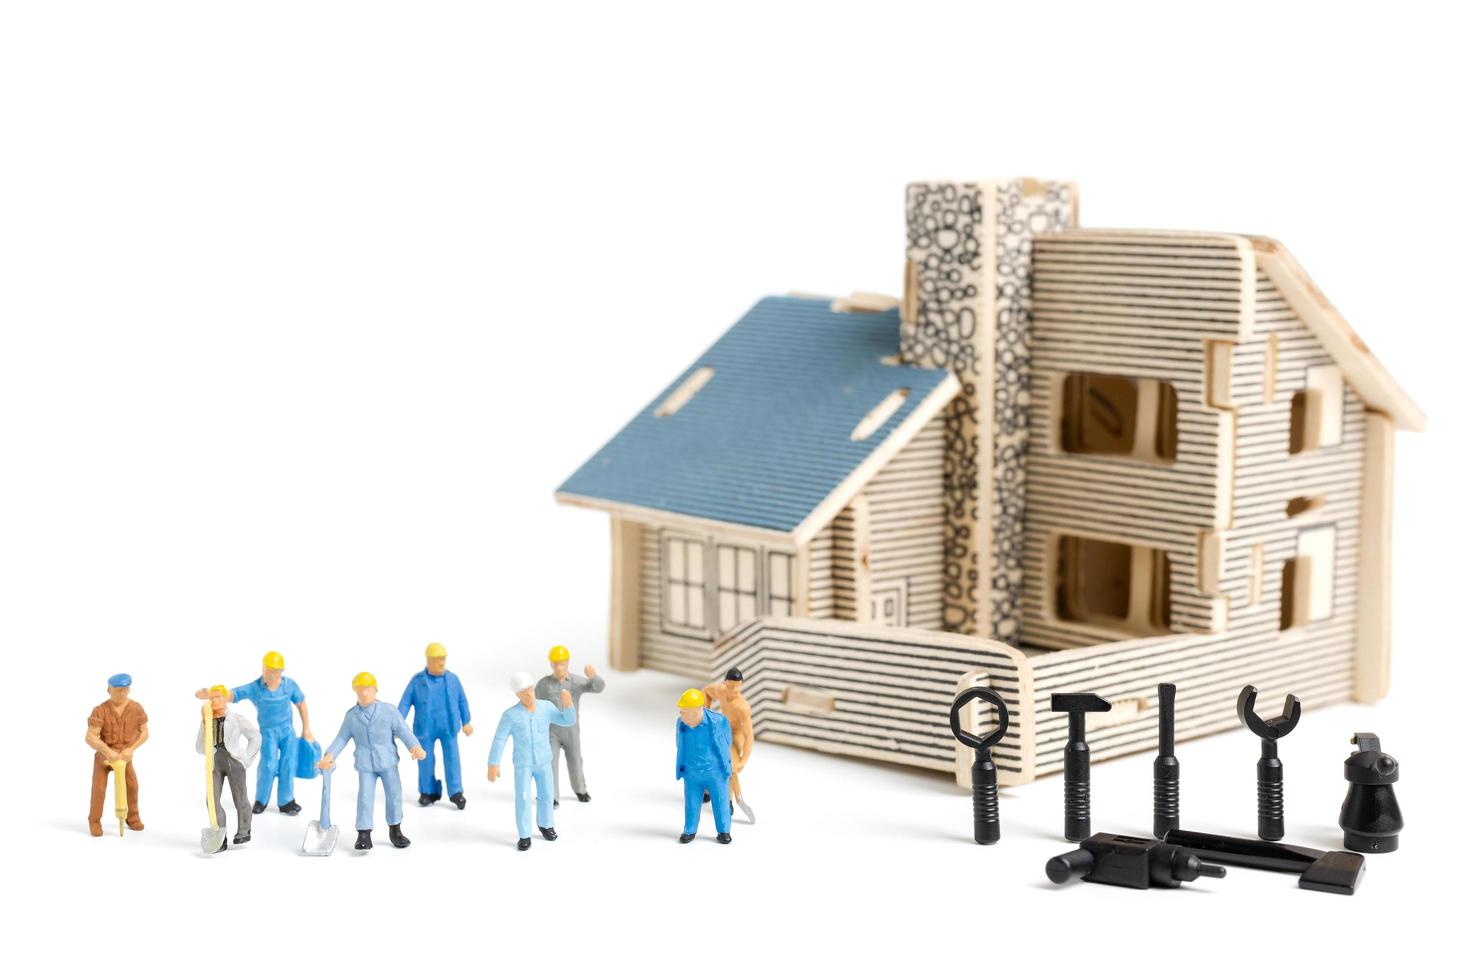 Travailleurs miniatures avec des outils de réparation d'une maison sur un fond blanc, concept de construction photo